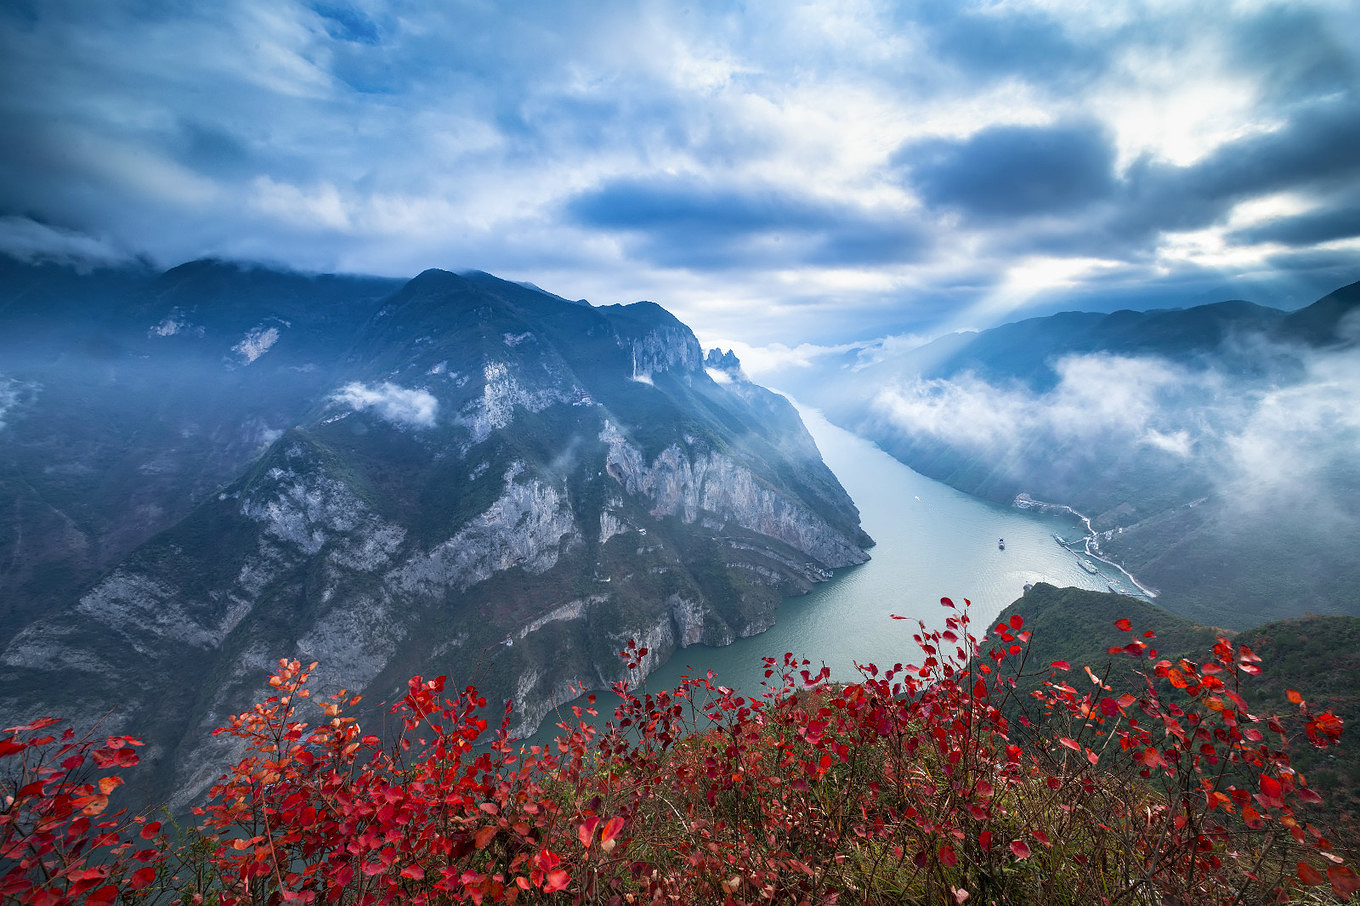 一幅巨大的天然山水画卷——长江三峡